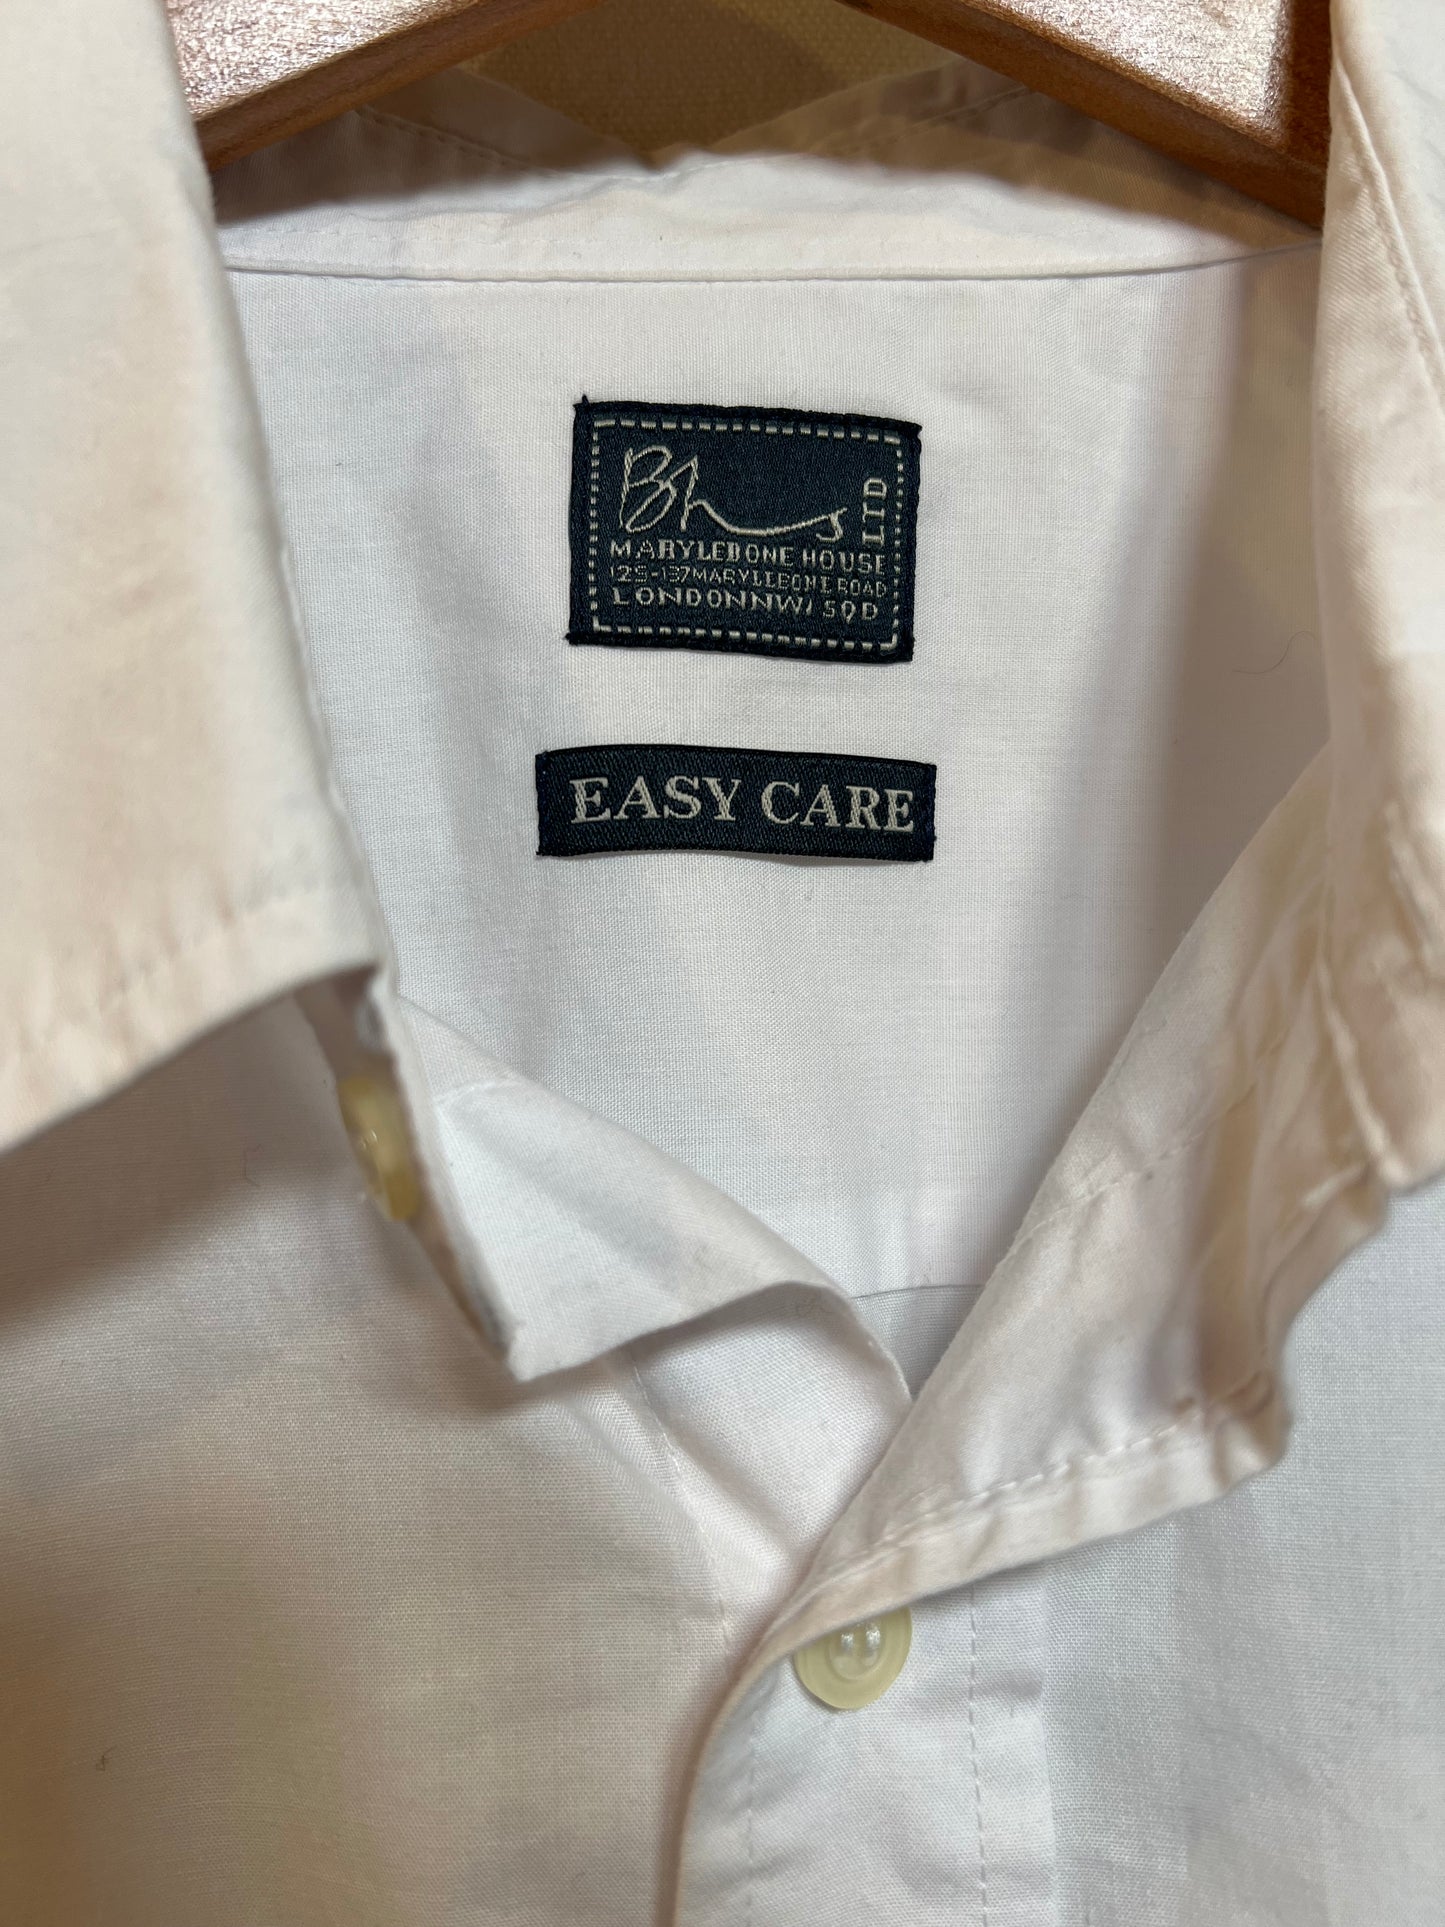 BHS Men’s Short Sleeved White Shirt (Size XXL)